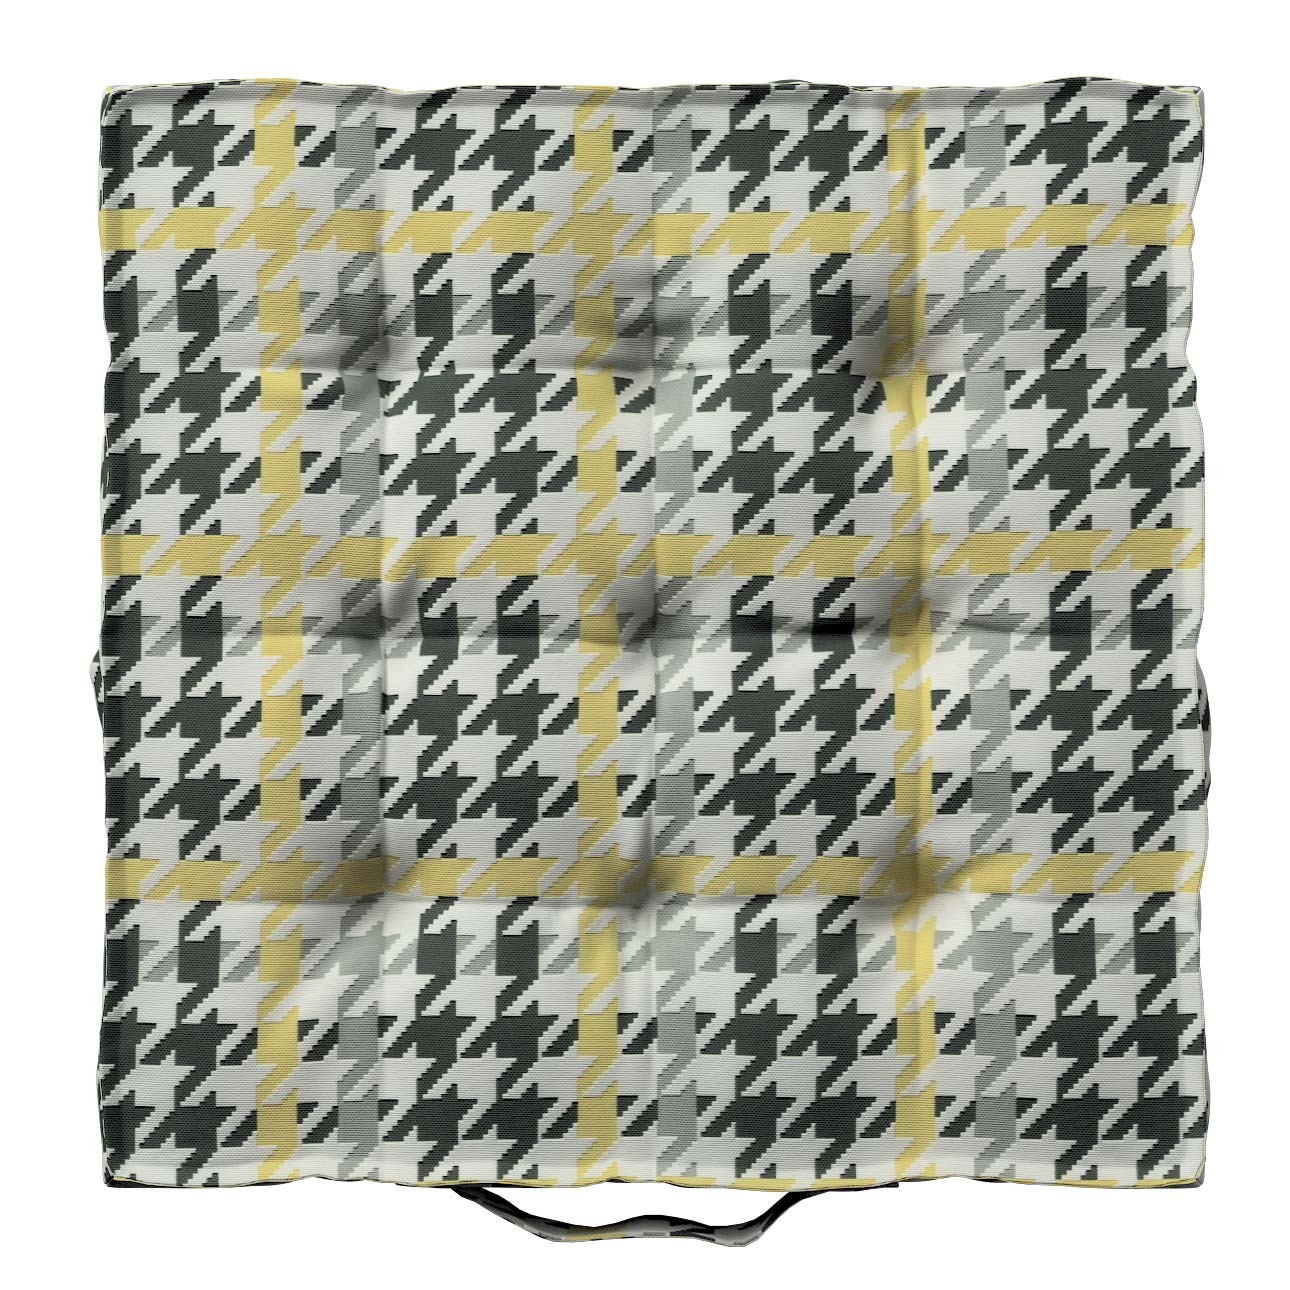 Sitzkissen Jacob mit Handgriff, gelb-schwarz, 40 x 40 x 6 cm, SALE (137-79) günstig online kaufen